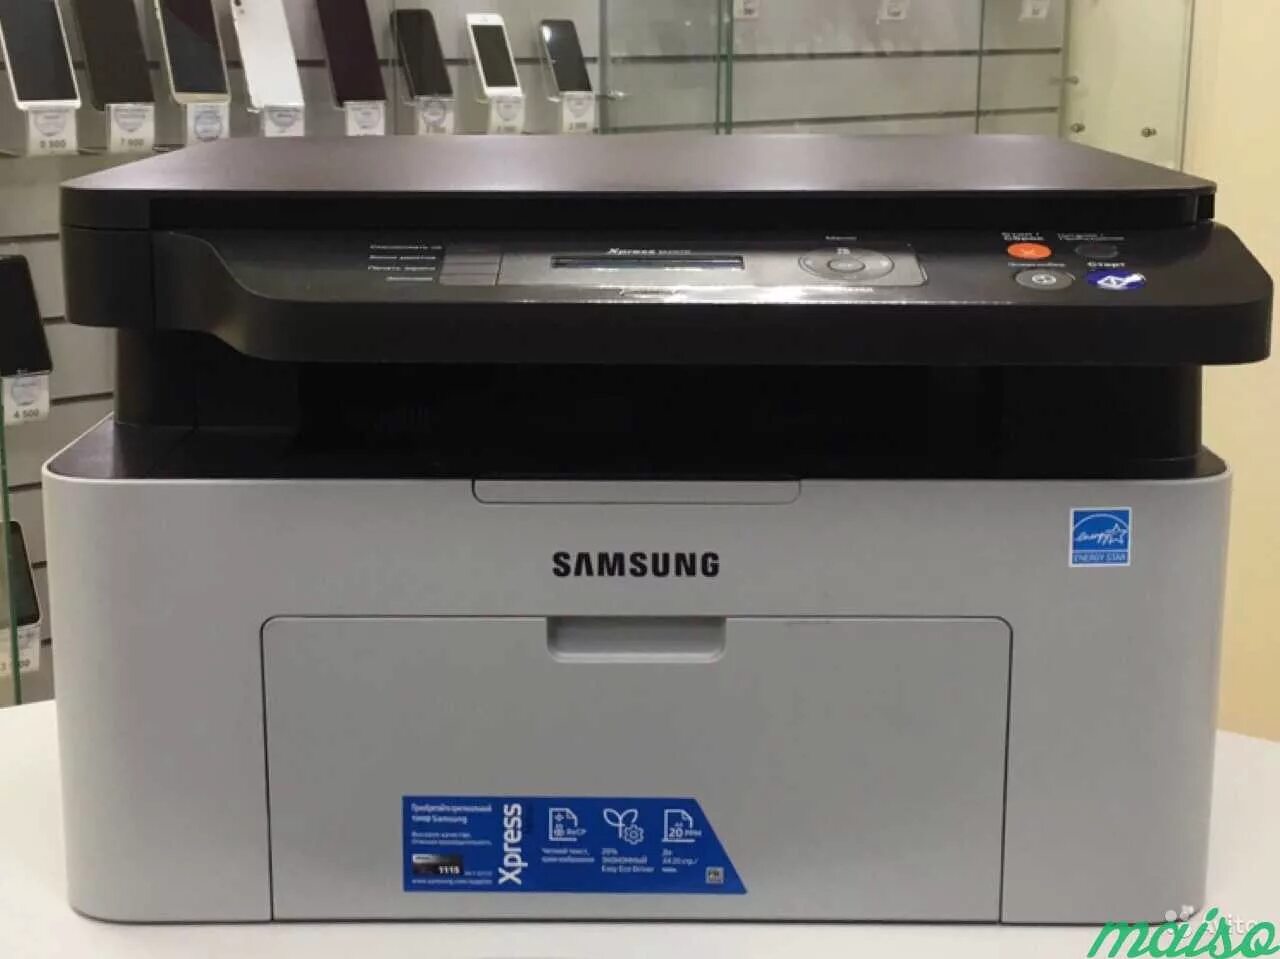 МФУ самсунг м2070. Принтер самсунг экспресс м2070. Samsung Xpress m2070. МФУ Samsung 2070.